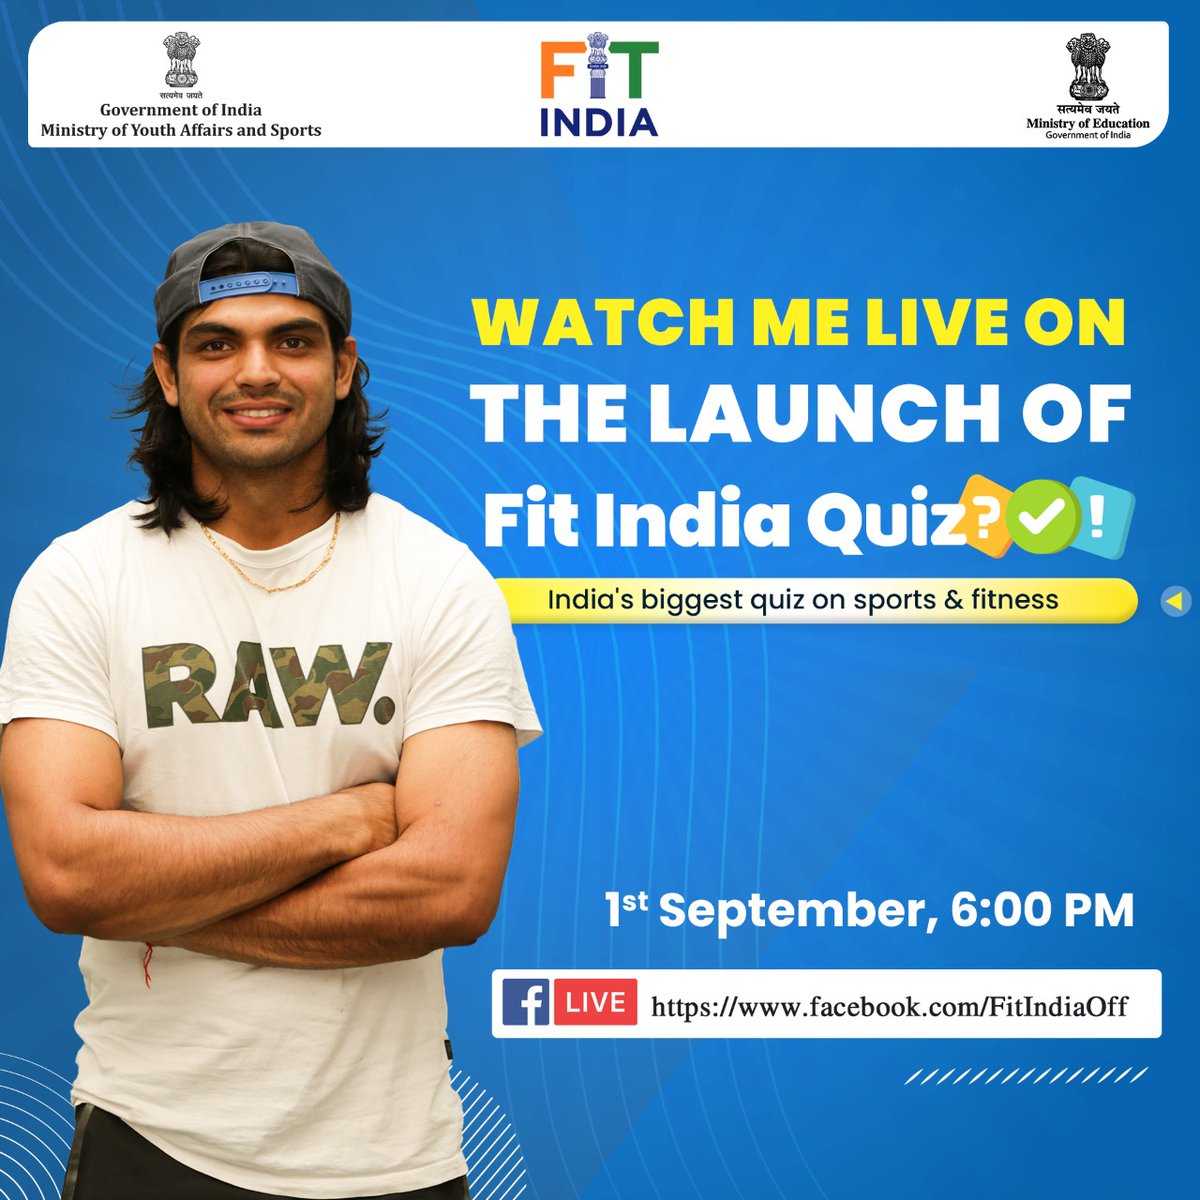 नमस्कार साथियों, कल मैं आ रहा हूं इंडिया के सबसे बड़े quiz के लॉन्च इवेंट पर।

देखिए मुझे Fit India Quiz के लॉन्च इवेंट पर 1 September को शाम 6 बजे @FitIndiaOff के Facebook पेज पर ➡️ facebook.com/FitIndiaOff/

#FitIndiaQuiz